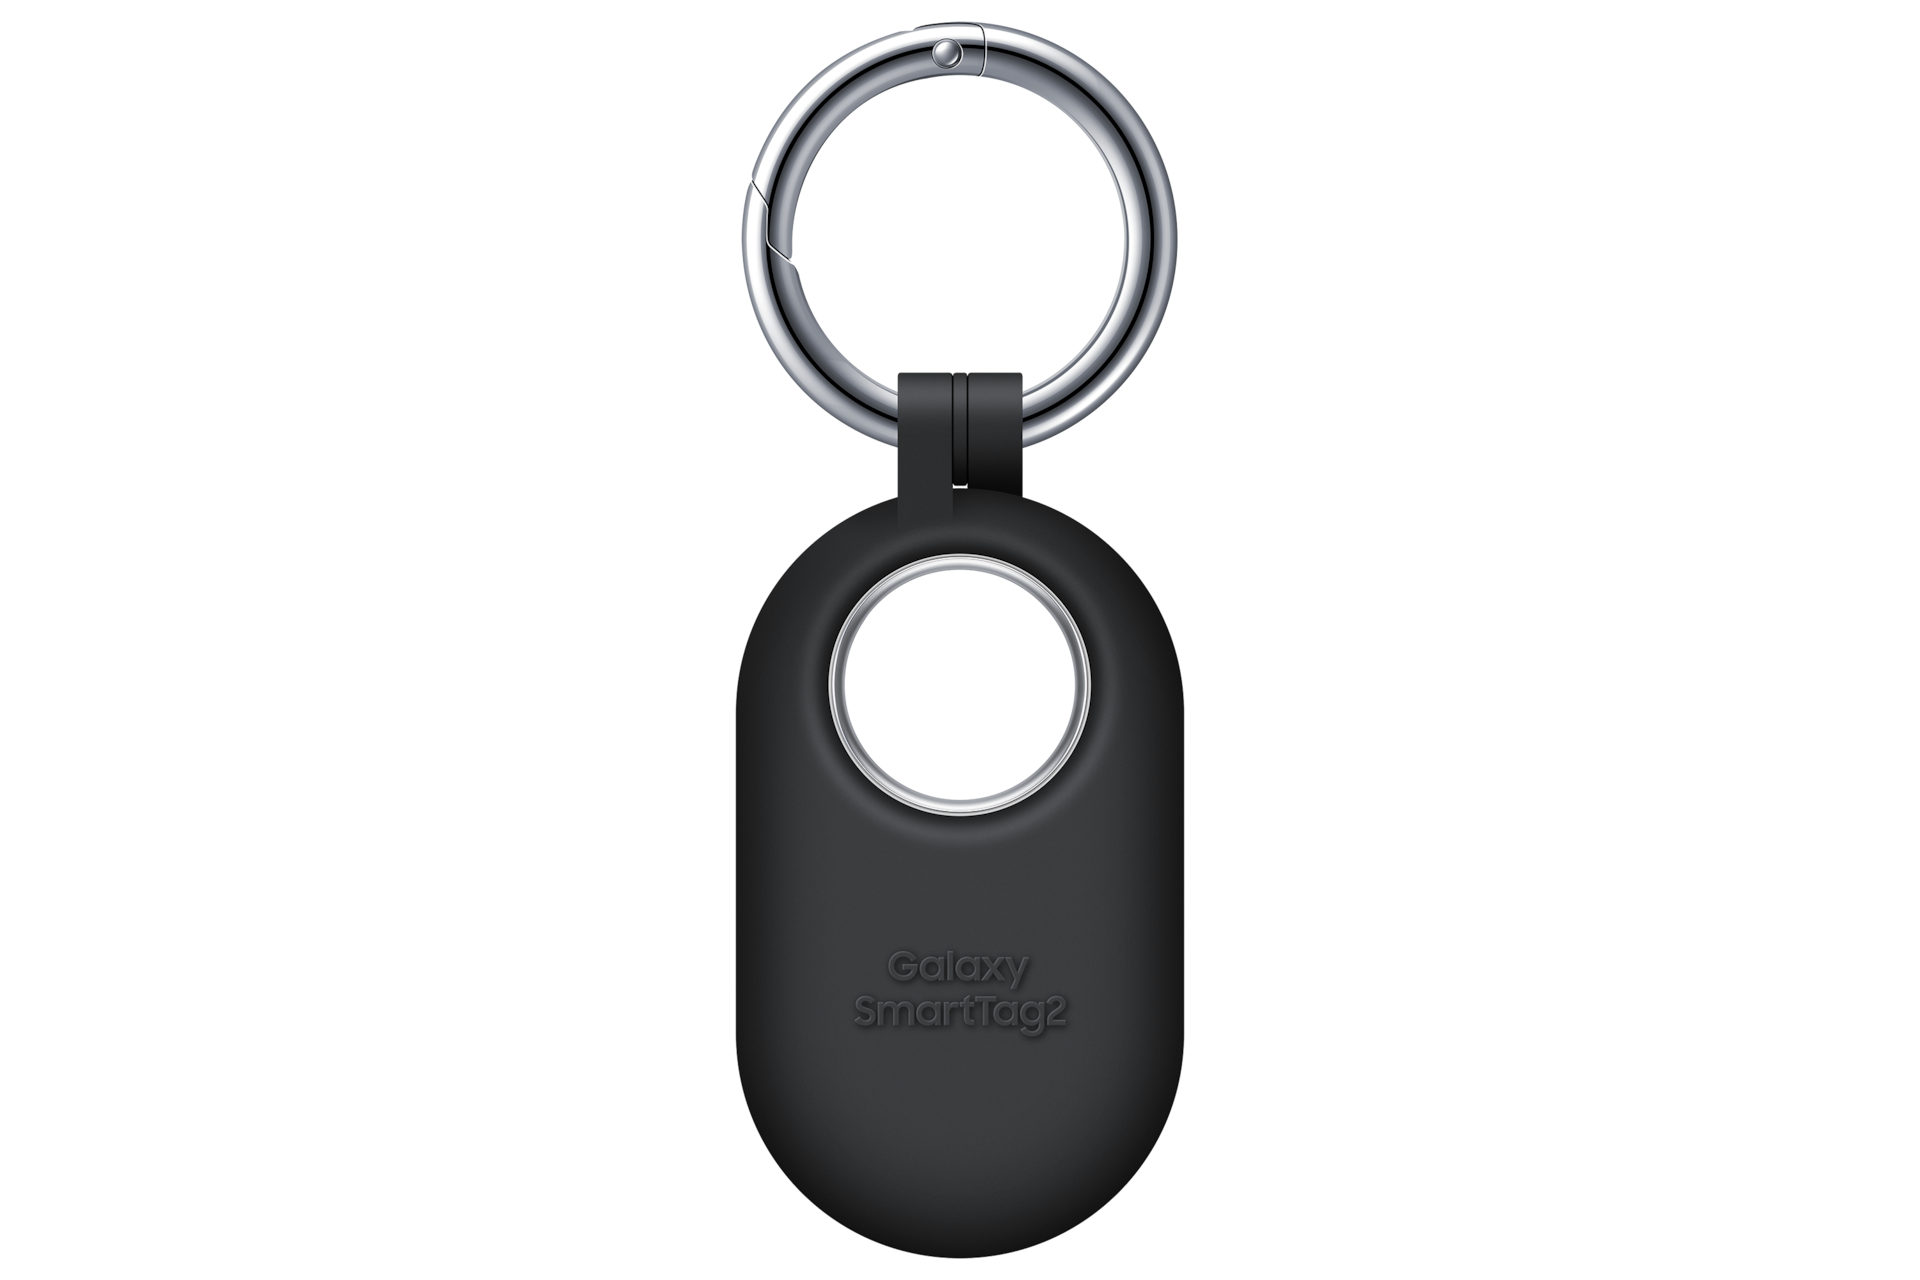 Galaxy SmartTag : tout savoir sur le porte-clé connecté de Samsung